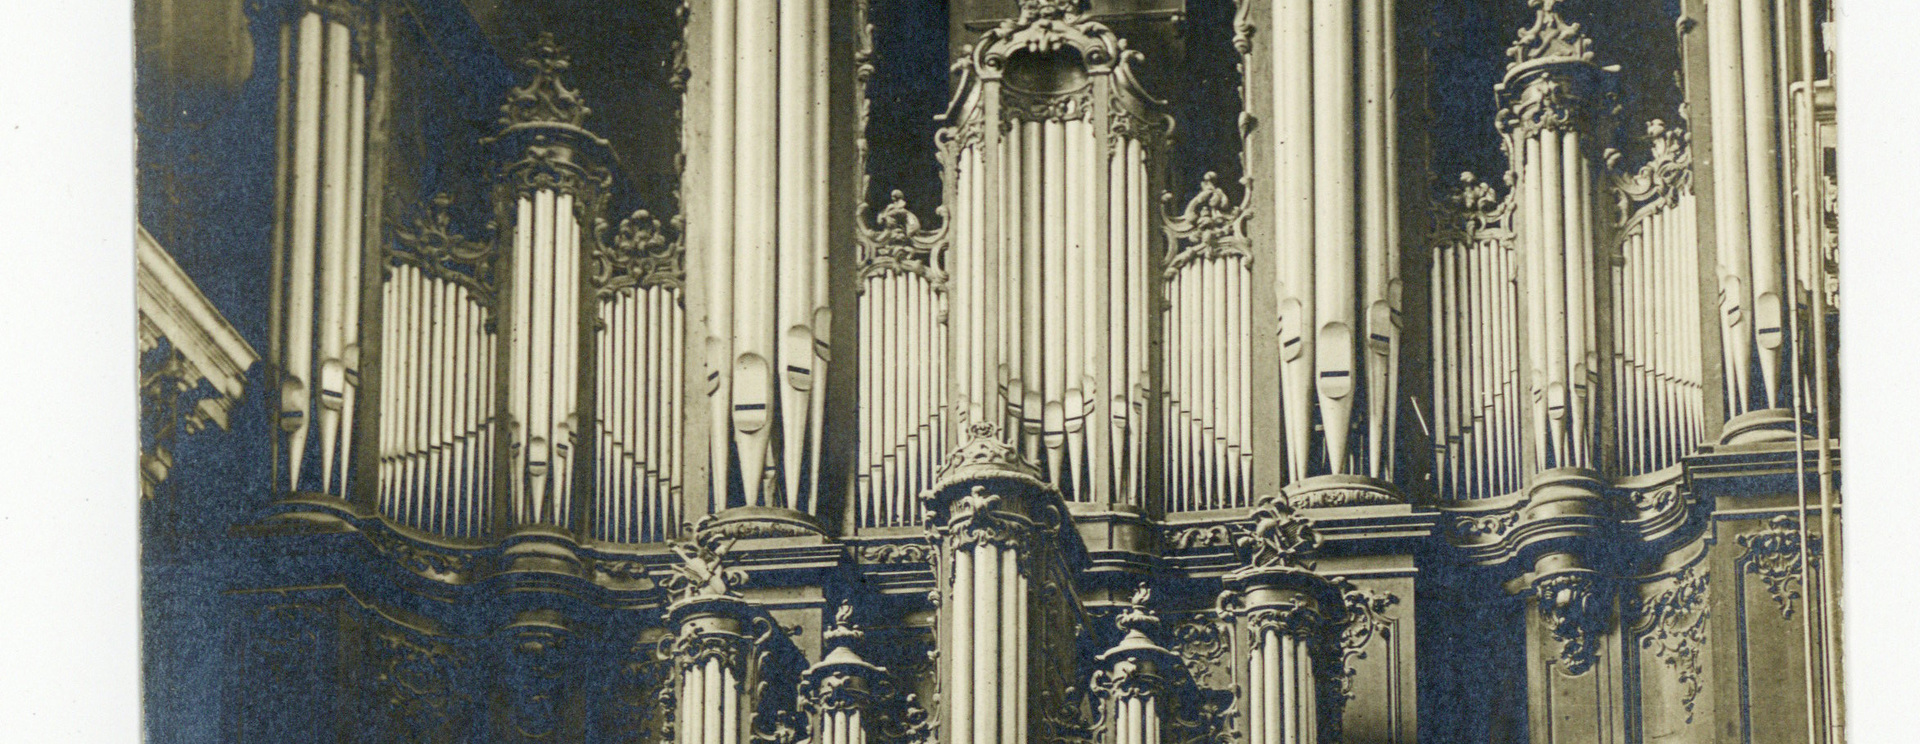 Les orgues de Lorraine